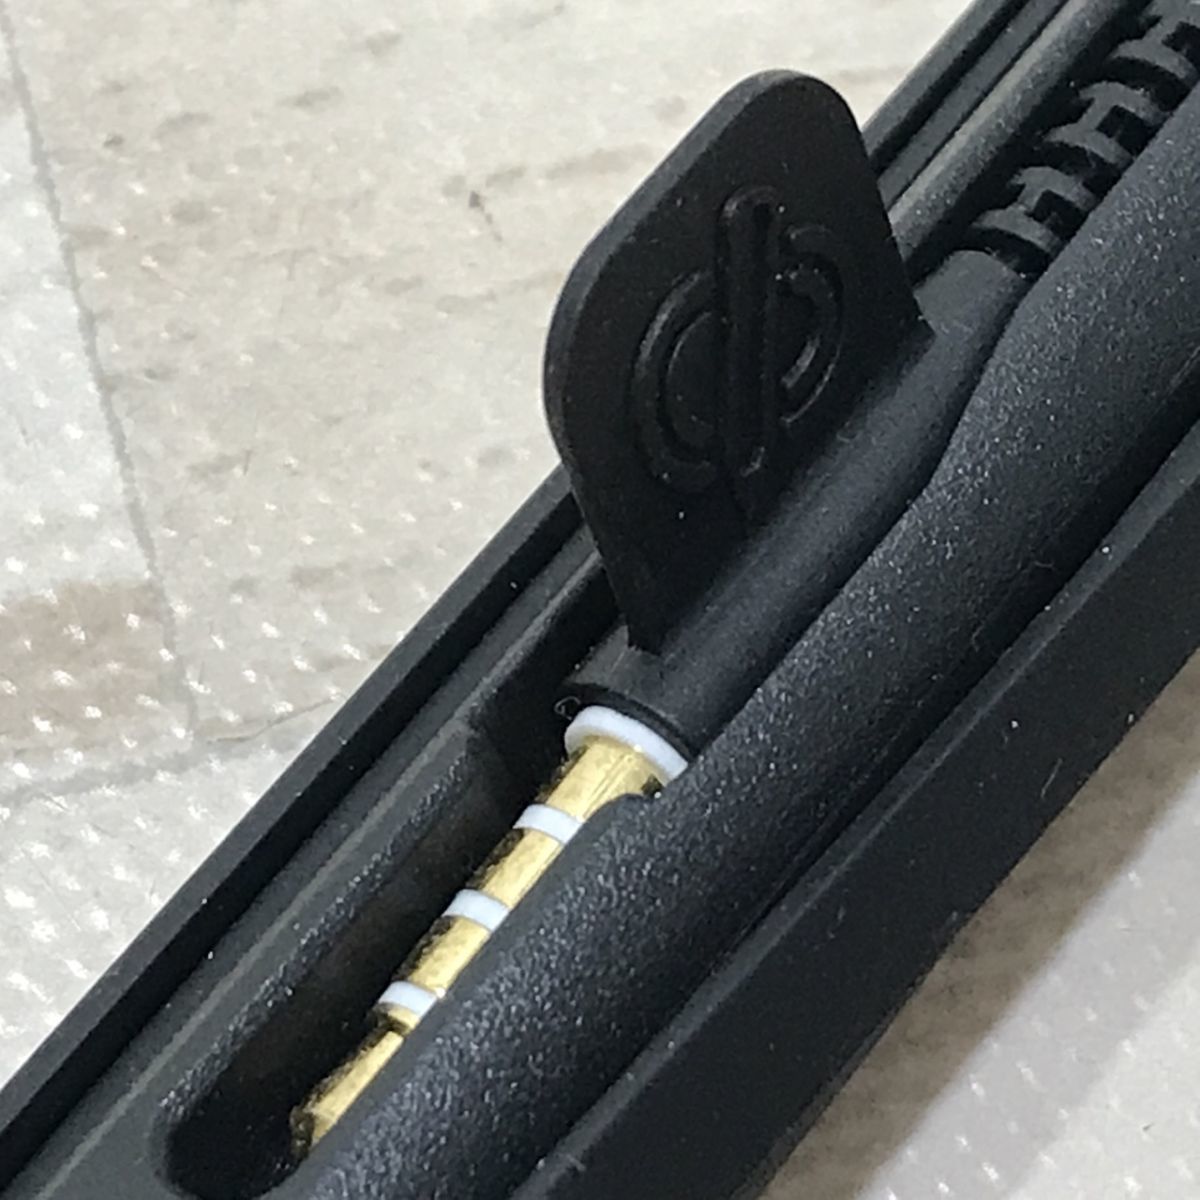 SonarPen (ソナーペン) スタイラスペン 筆圧感知 タッチペン [C1610]の画像4